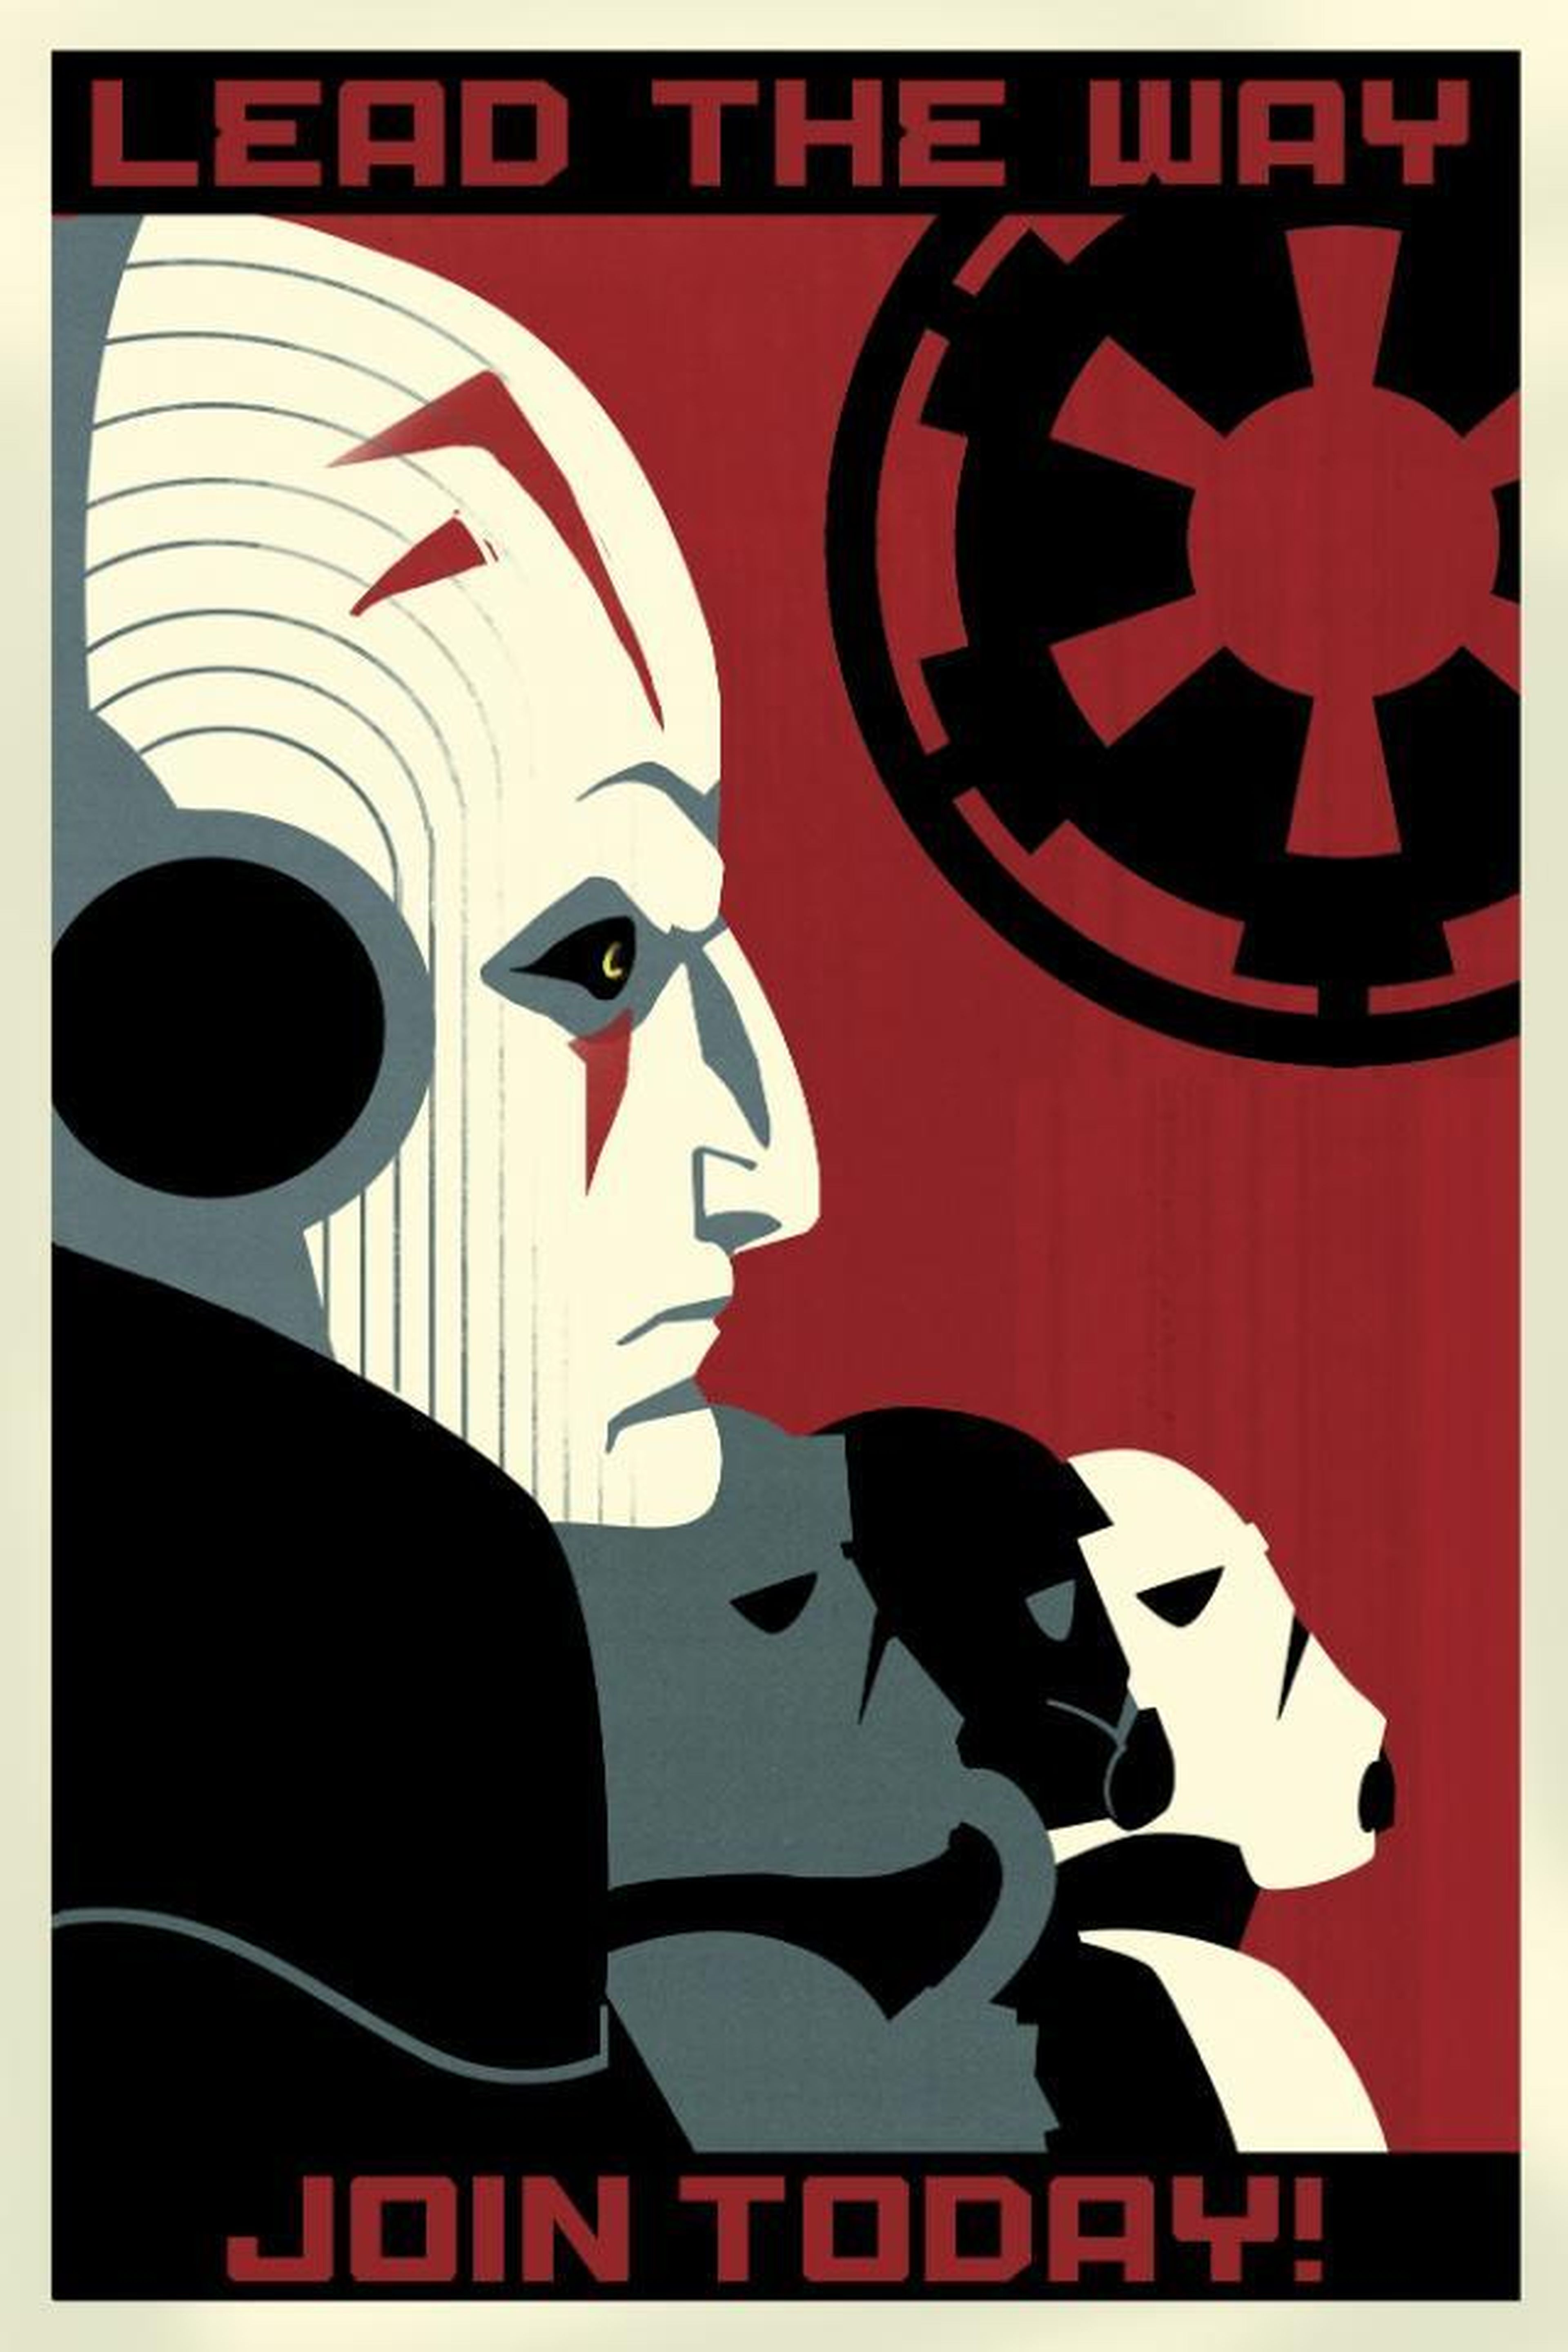 Posters de reclutamiento de Star Wars Rebels